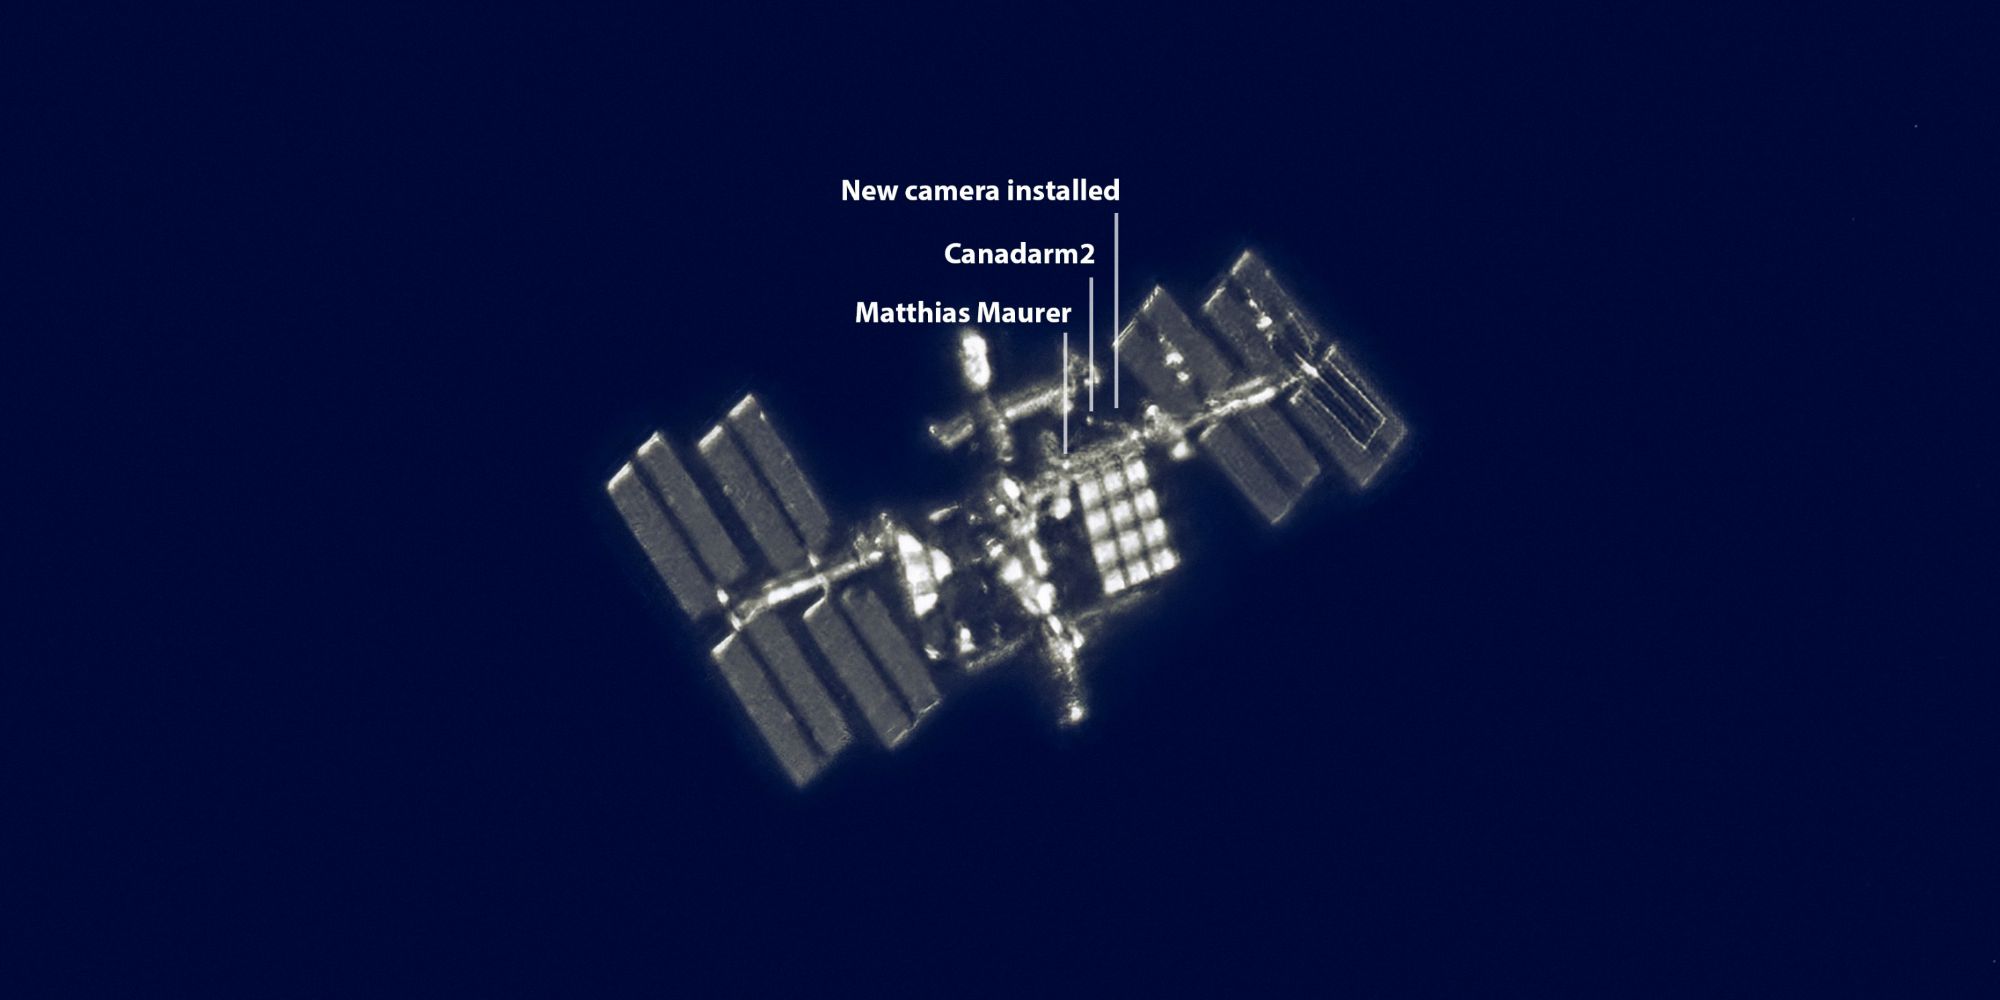 ISS Spacewalk capturado en esta increíble foto única en la vida